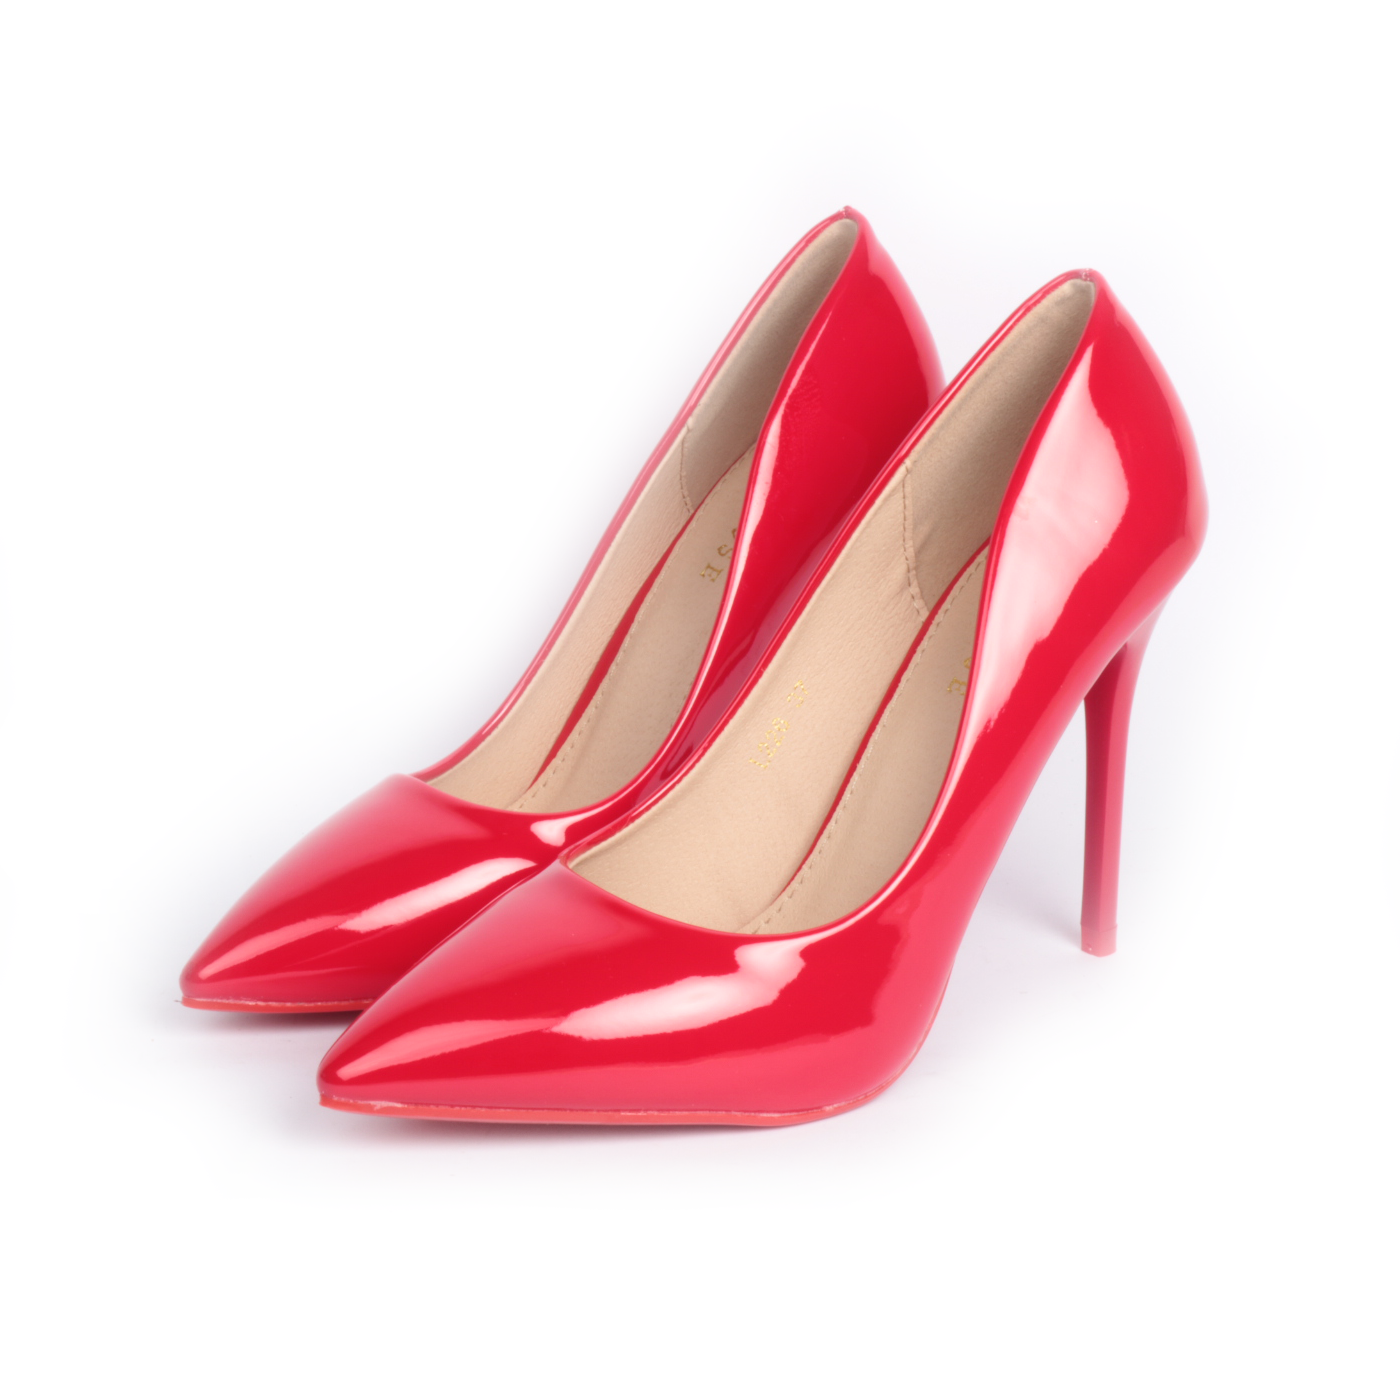 Damerose - Decolté a punta in vernice con tacco a stiletto 10 cm - Rosso -  MitShopping - Abbigliamento e scarpe